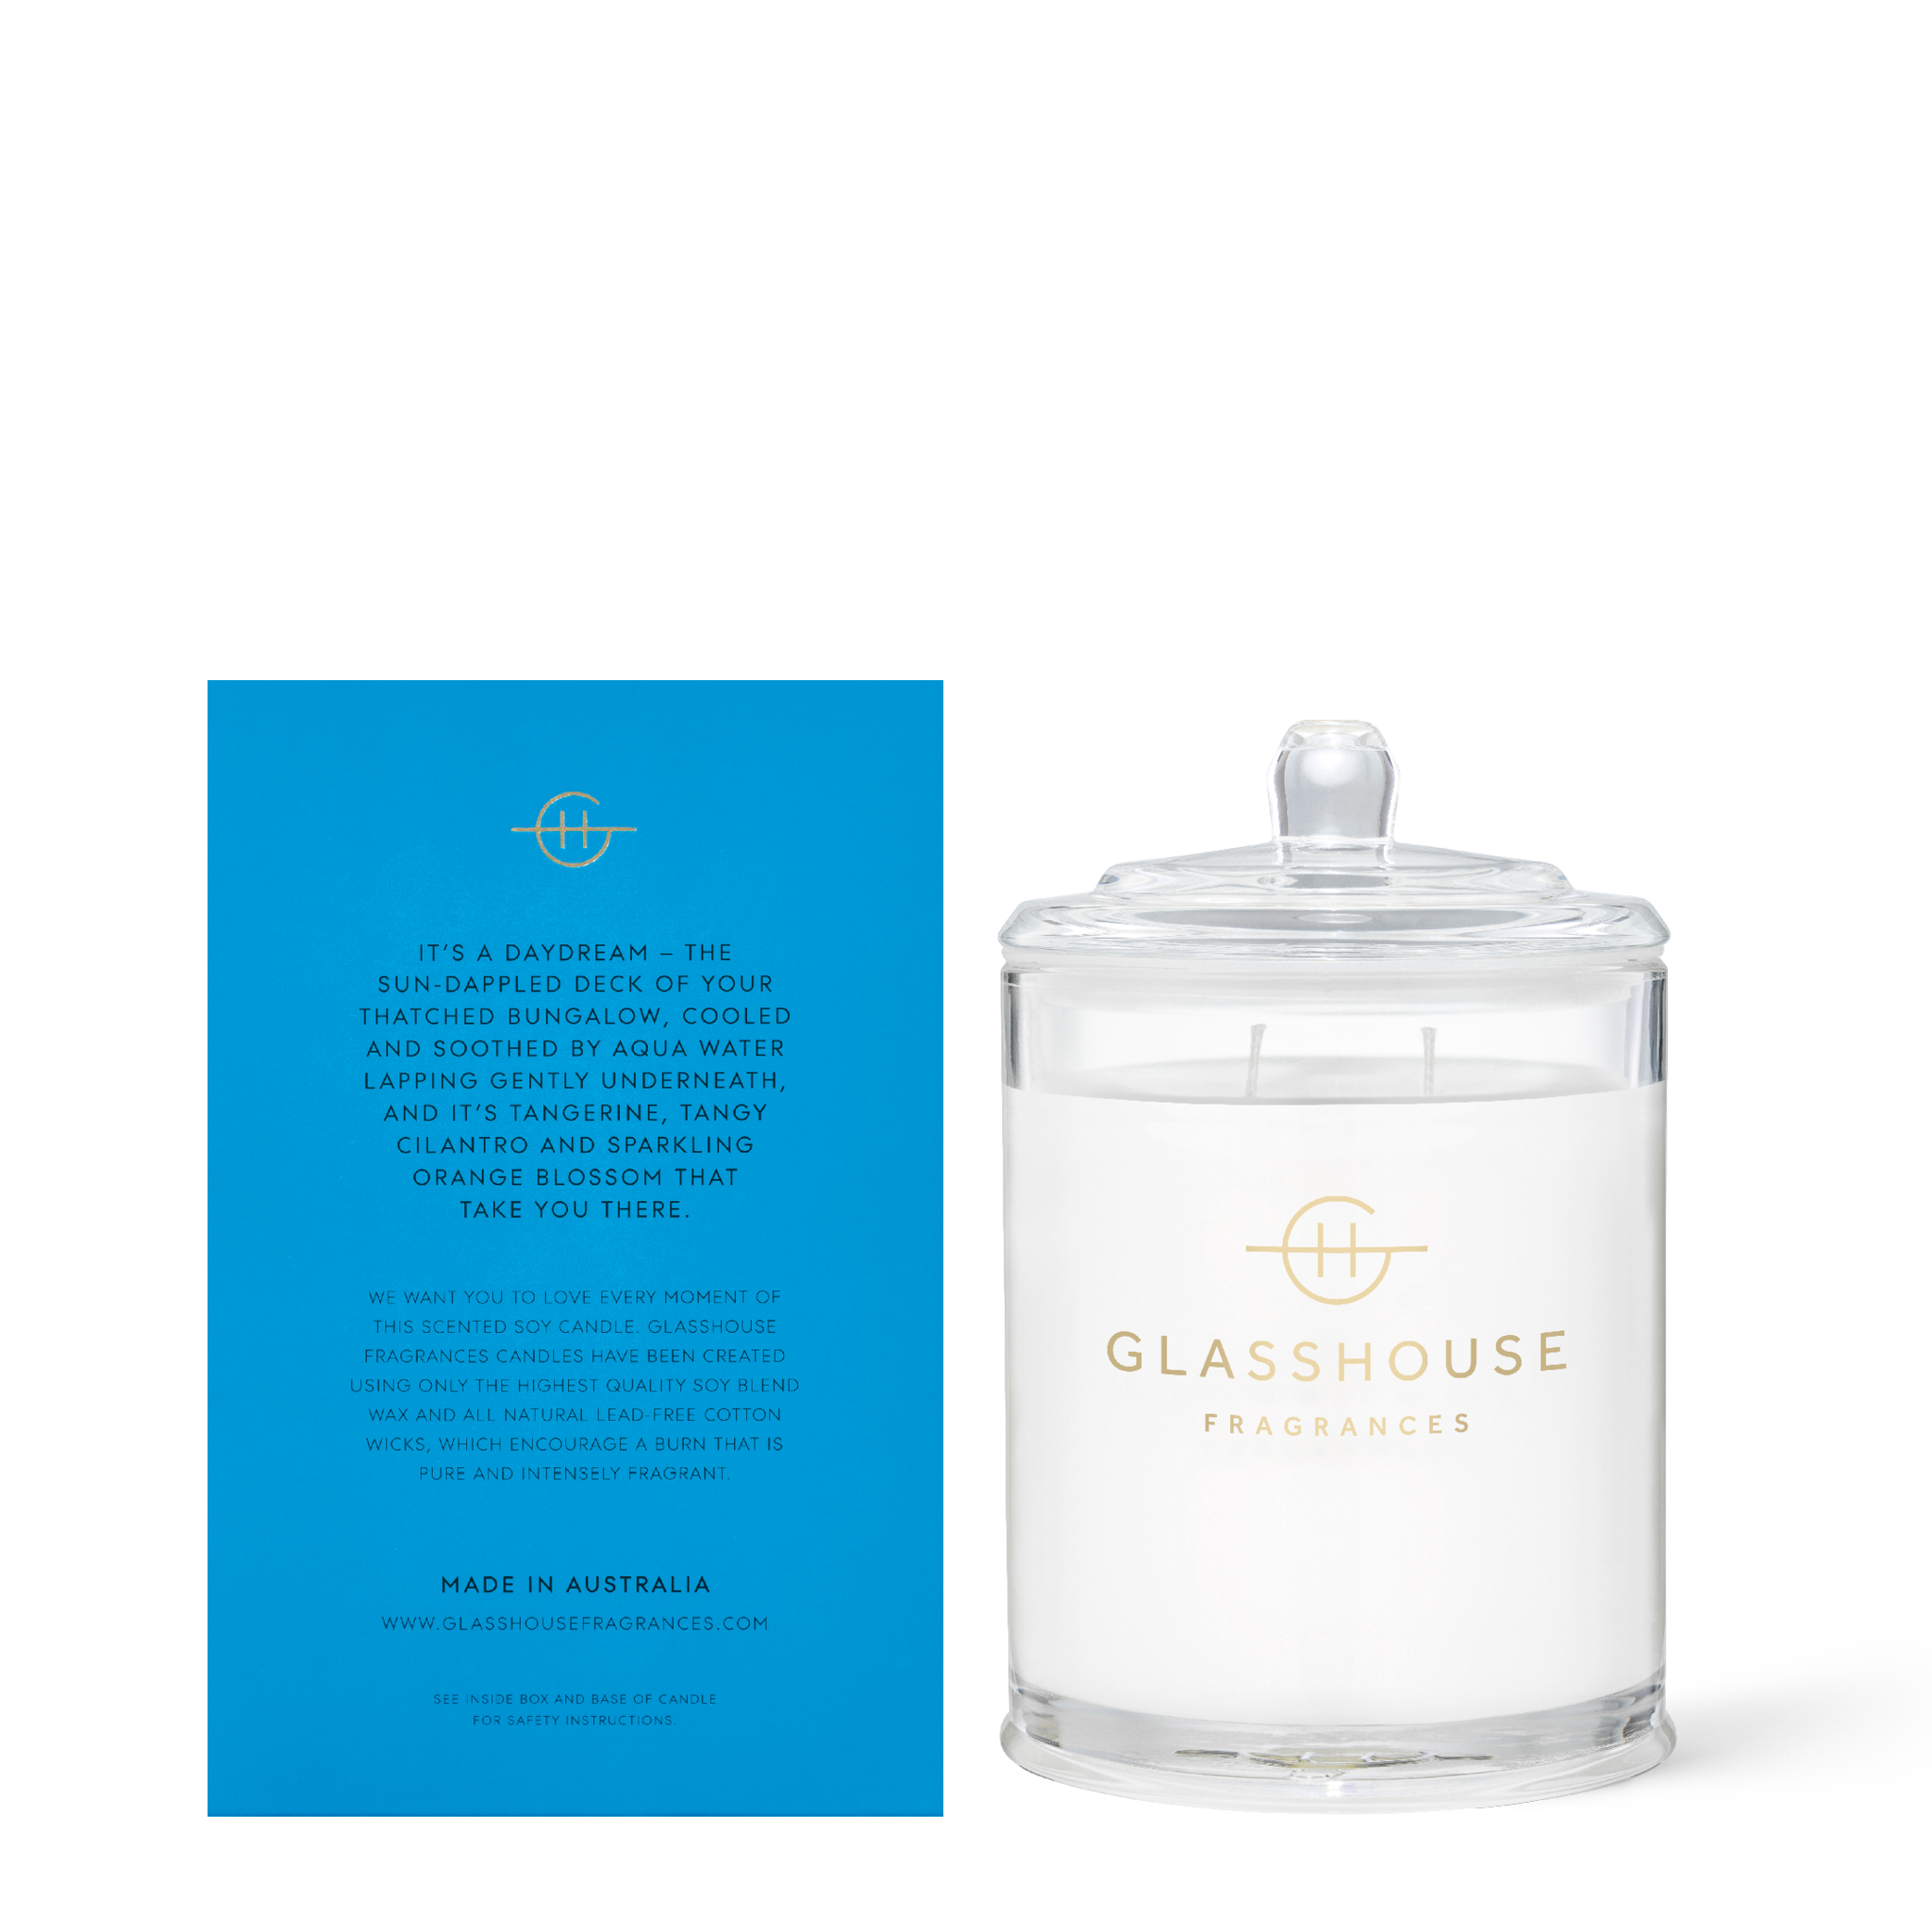 Glasshouse Fragrances Bora Bora Bungalow Cilantro and Orange Zest 380g Soy Candle with box - back of product shot